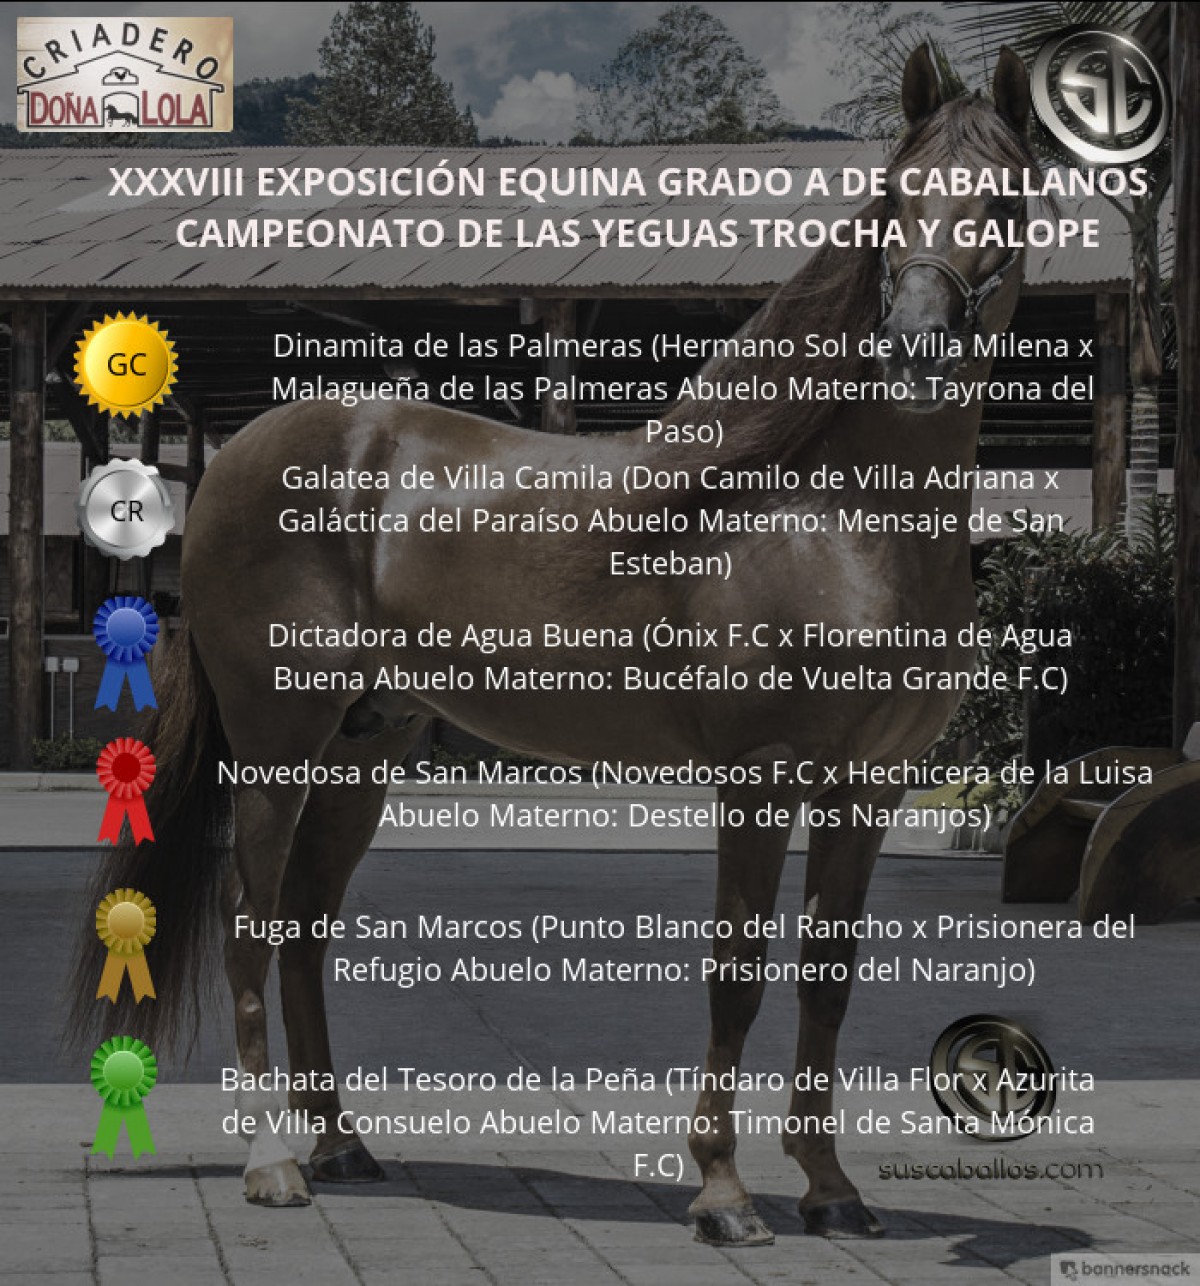 VÍDEO: Dinamita Campeona, Galatea Reservada, Trocha y Galope, Caballanos 2018